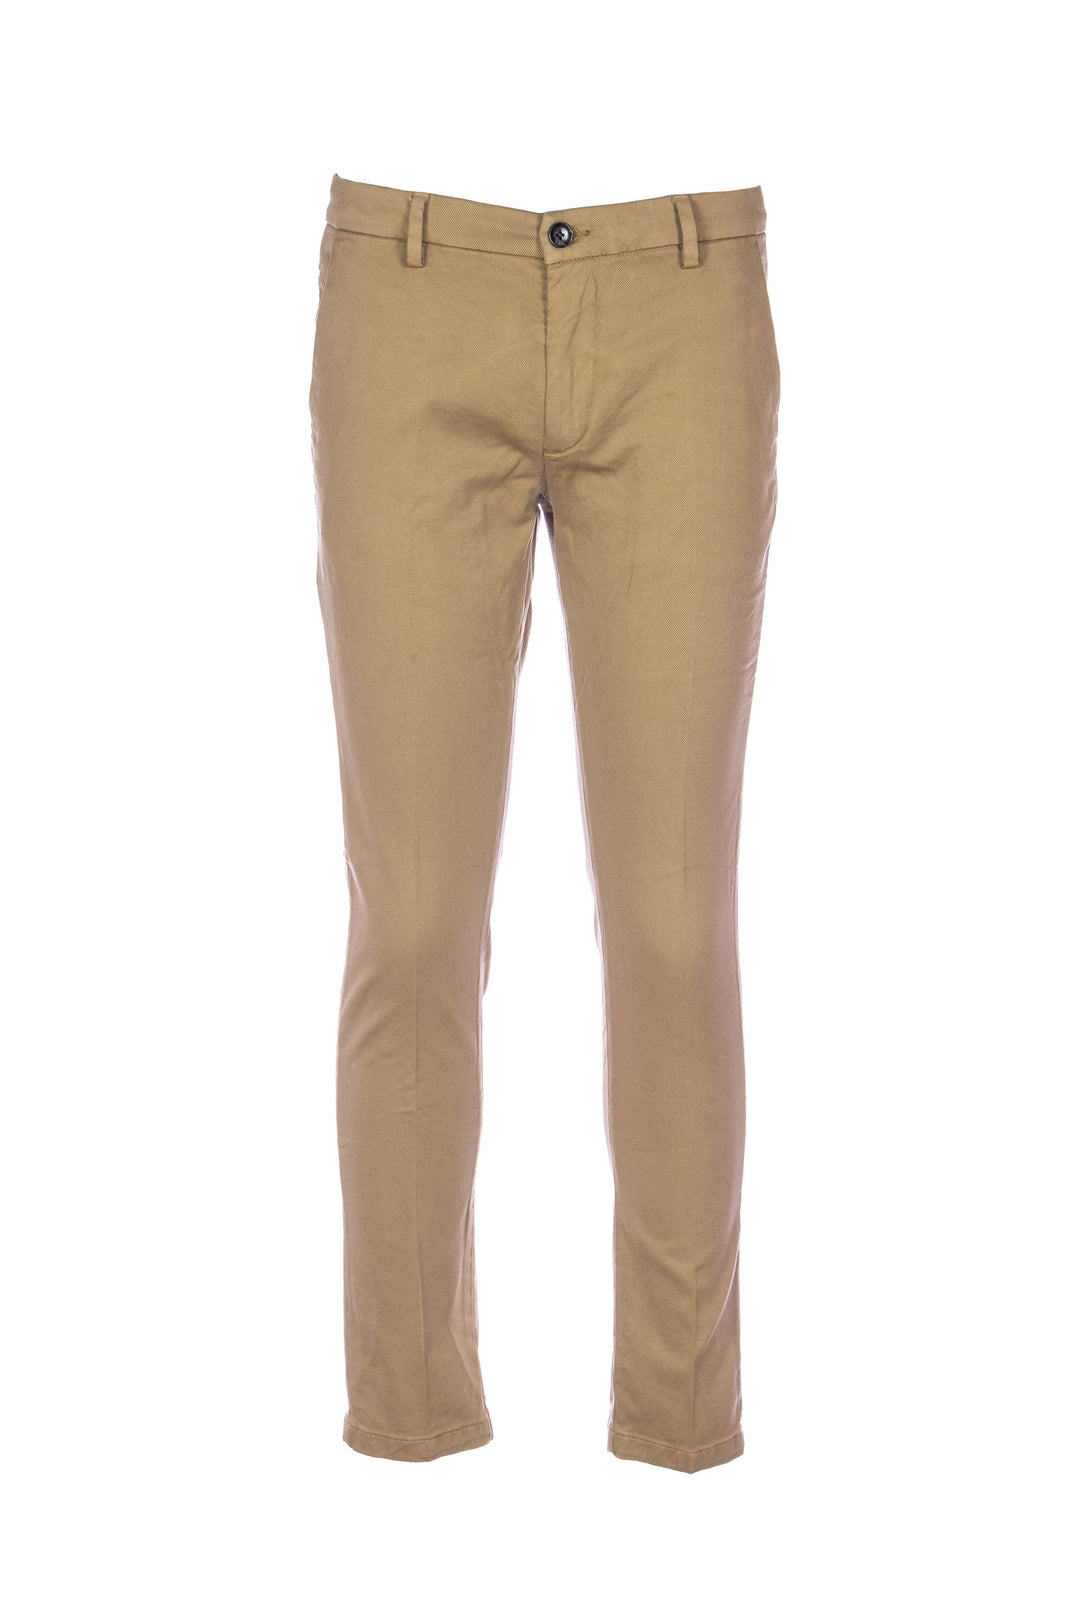 YAN SIMMON Pantalone cammello in gabardina di cotone elasticizzato - Mancinelli 1954